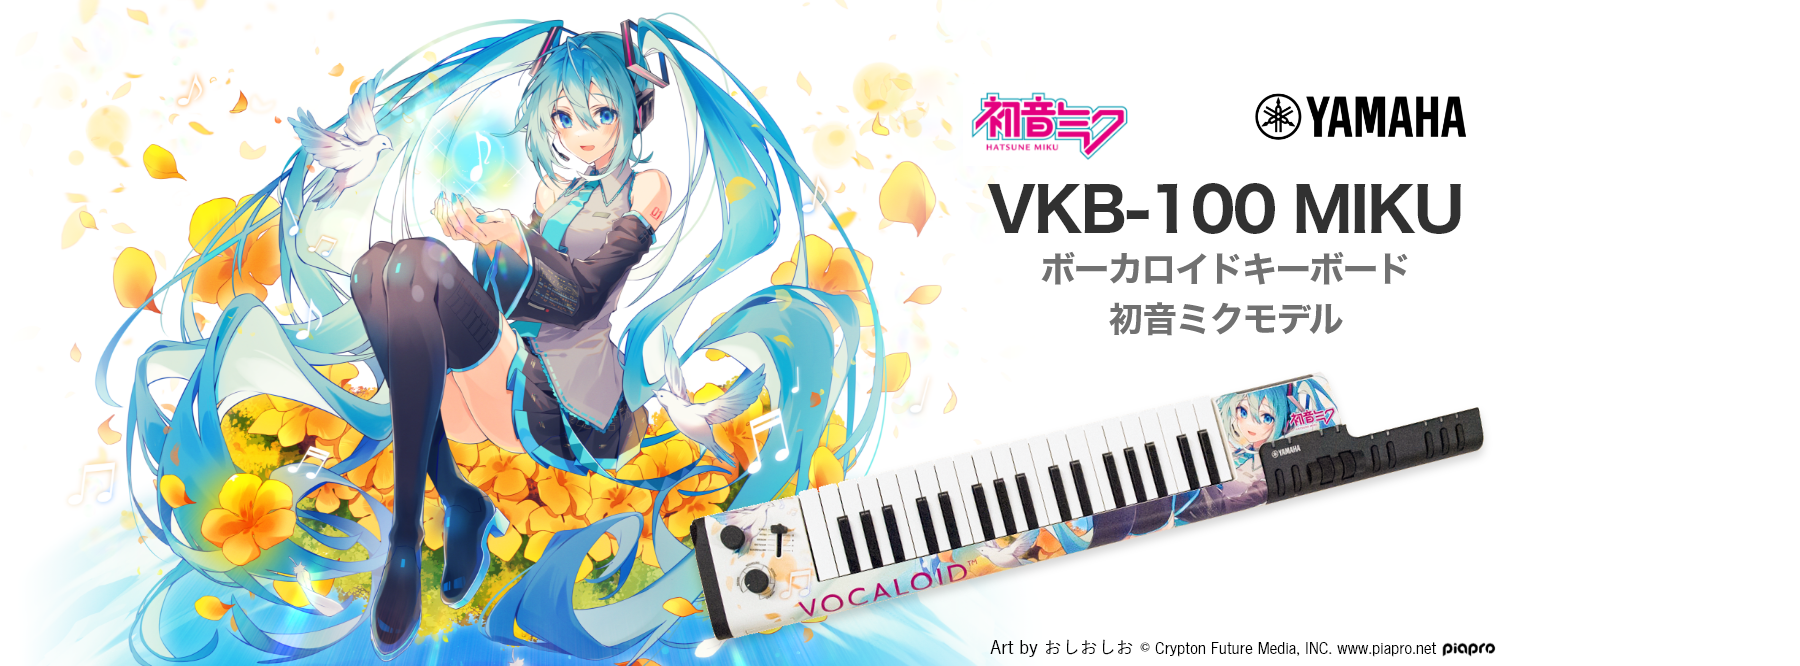 初音ミクVOCALOID Keyboard 初音ミクモデル16 VKB-100 MIKU